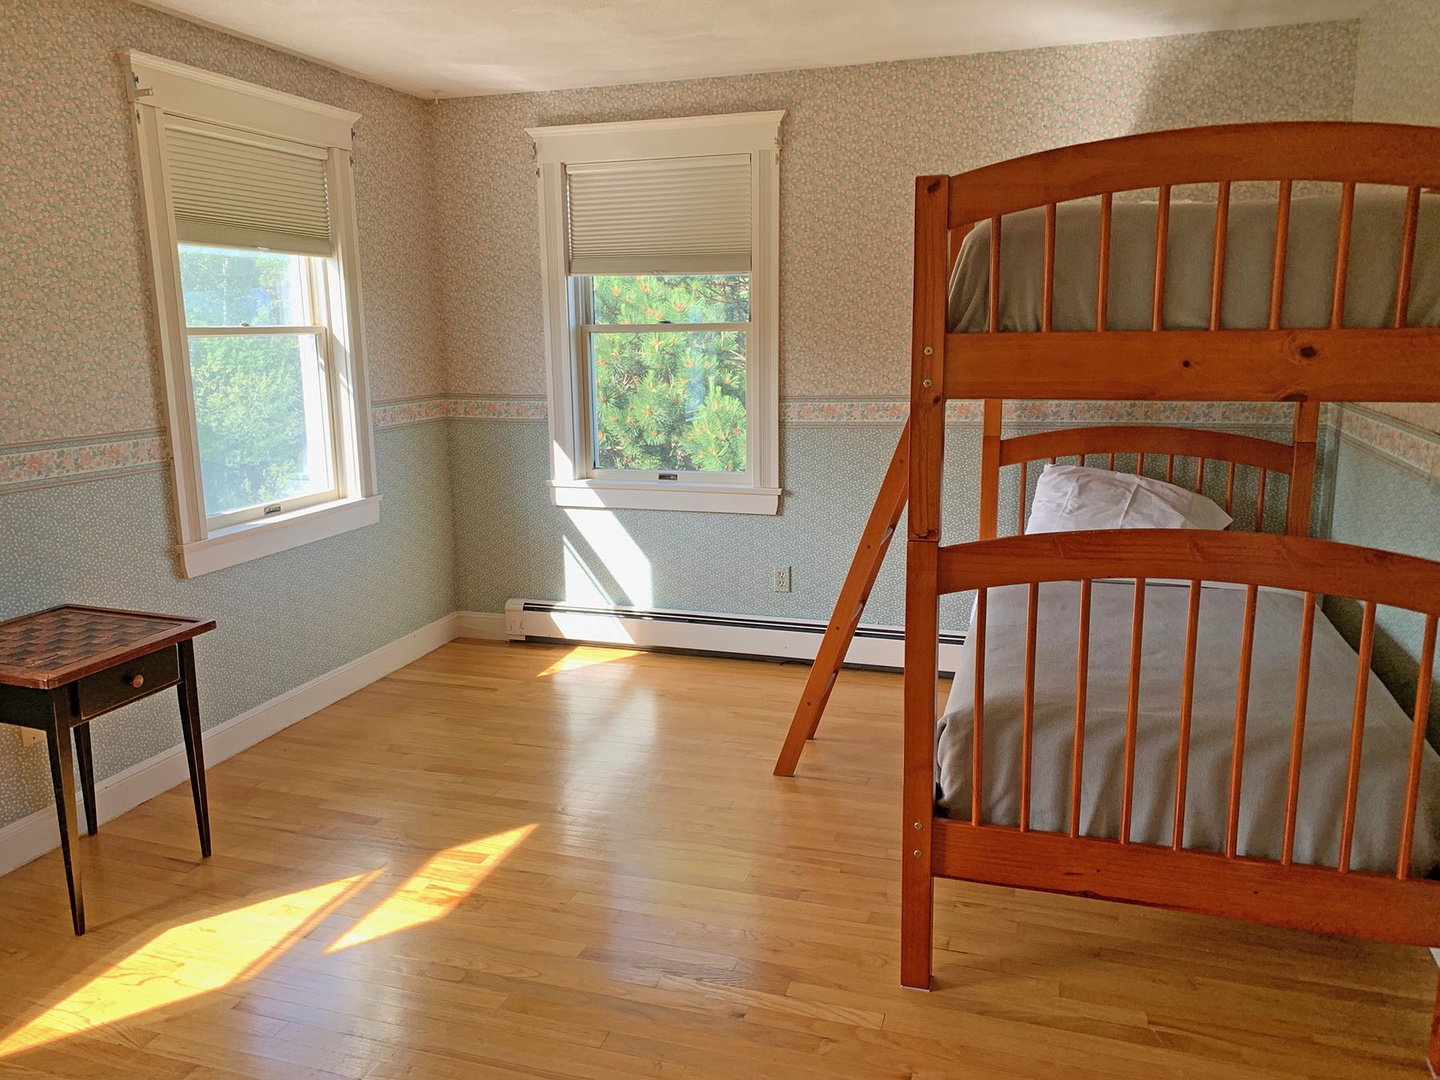 Bedroom 3: Bunk beds.